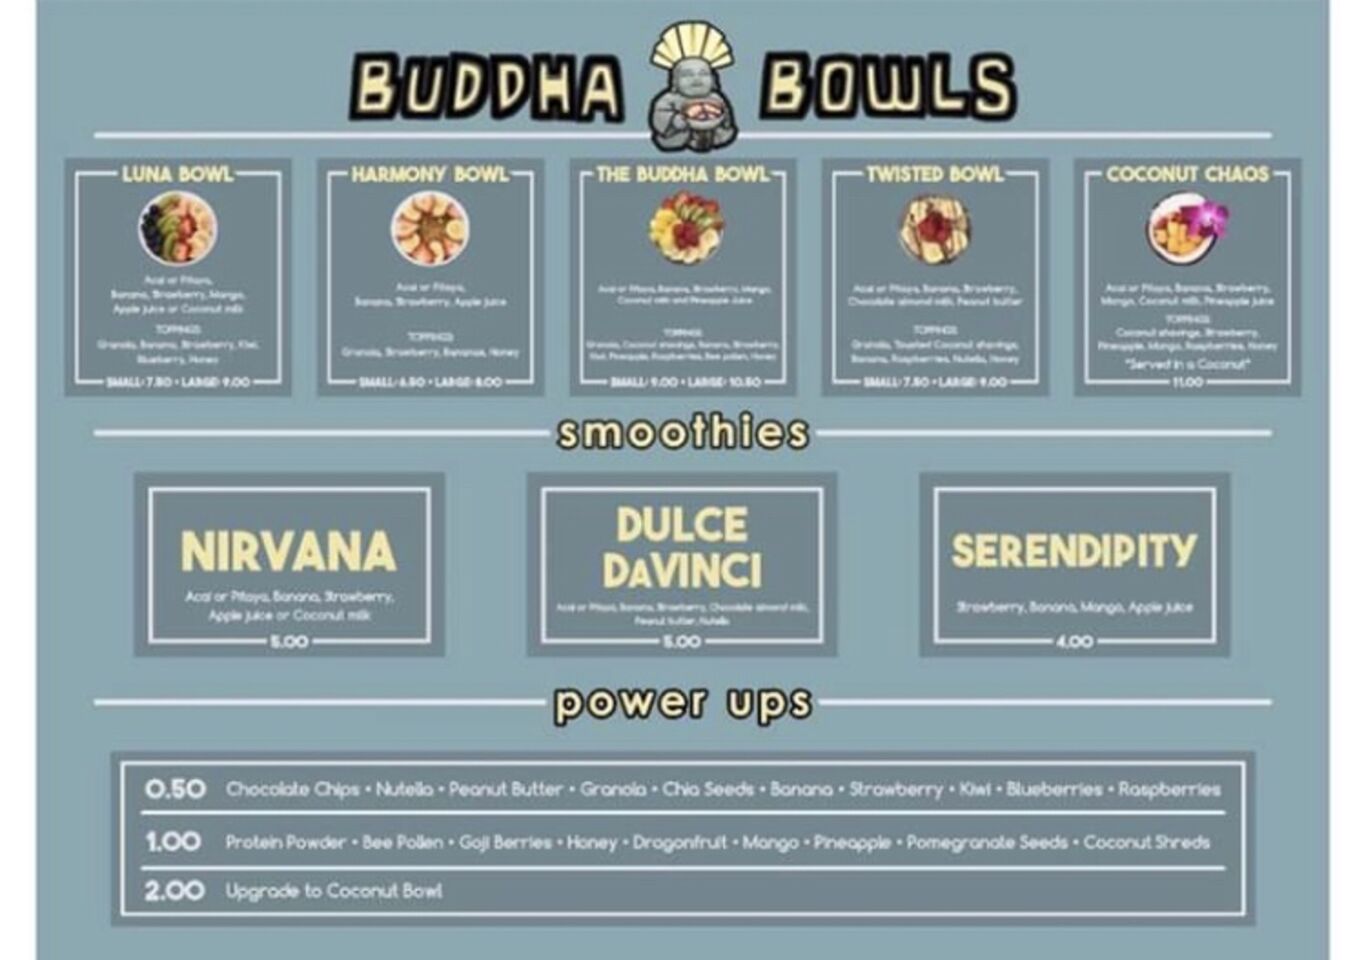 A photo of Buddha Bowls